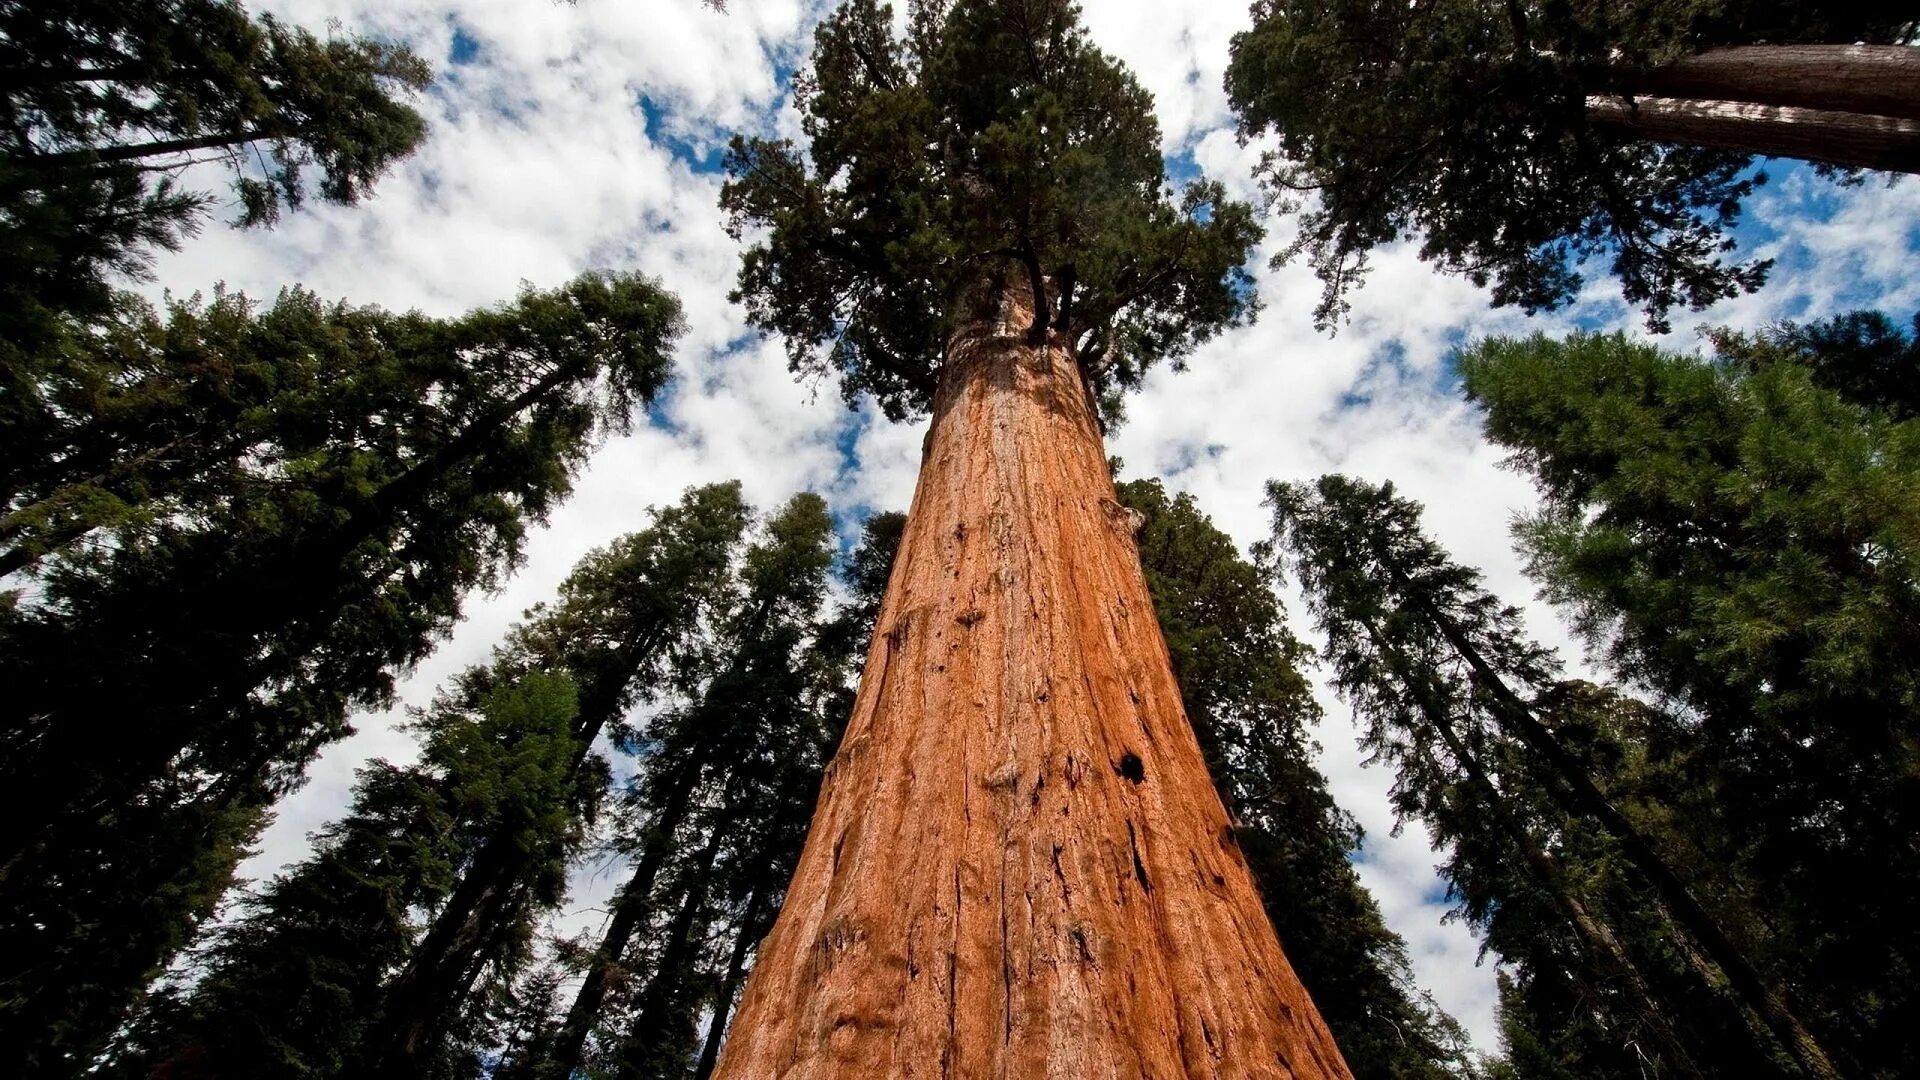 Могучие стволы. Калифорнийская Секвойя Гиперион. Секвойя дерево. Дерево Гиперион Редвуд. Секвойя вечнозелёная Гиперион.